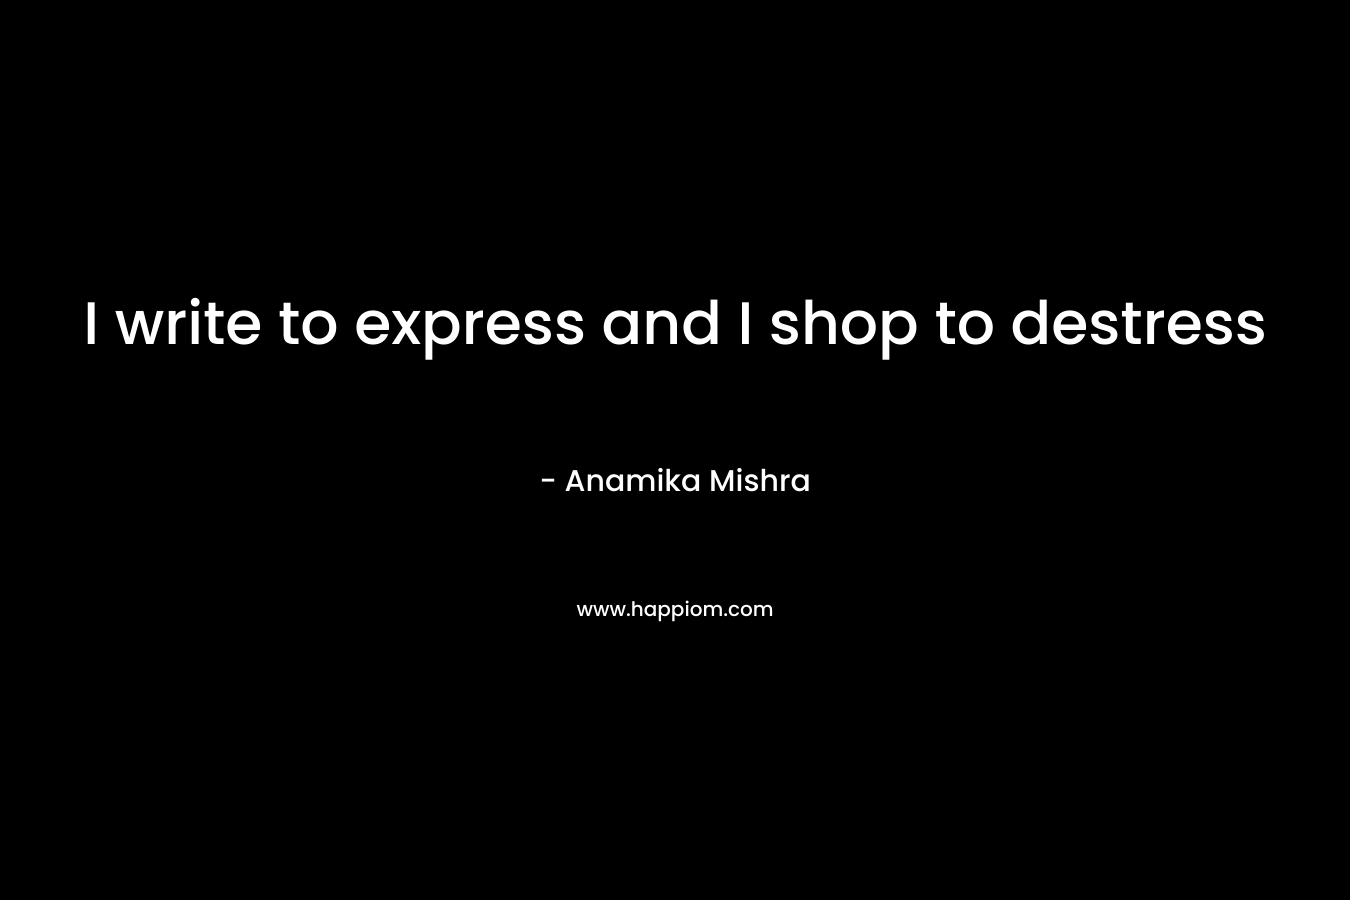 I write to express and I shop to destress